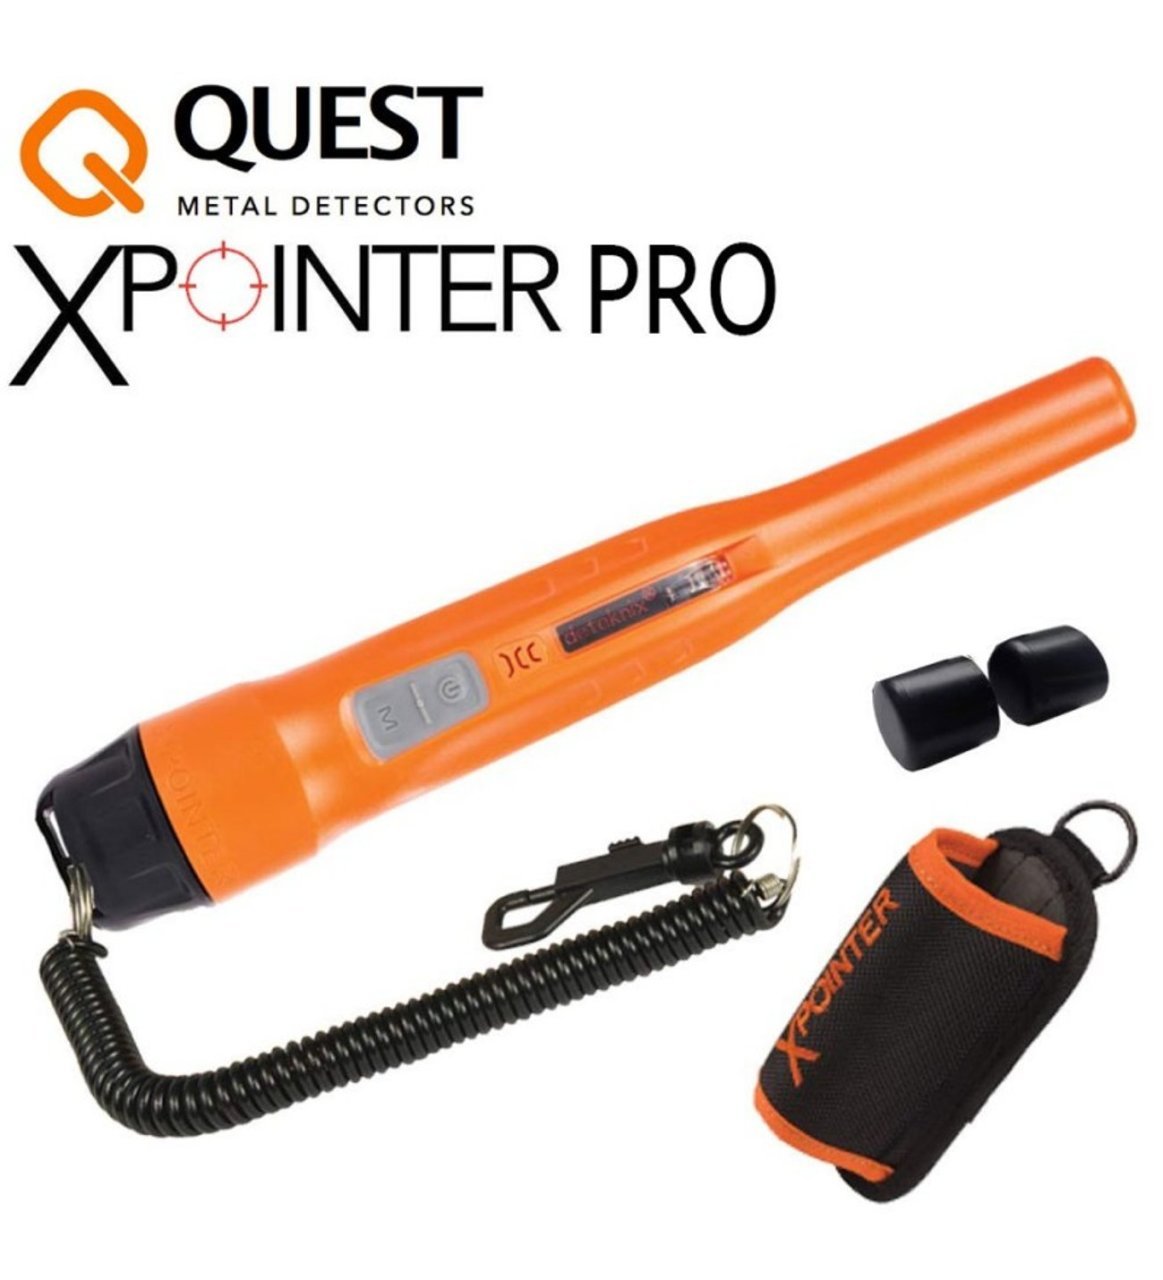 Quest Metal Detectors XPointer Pro